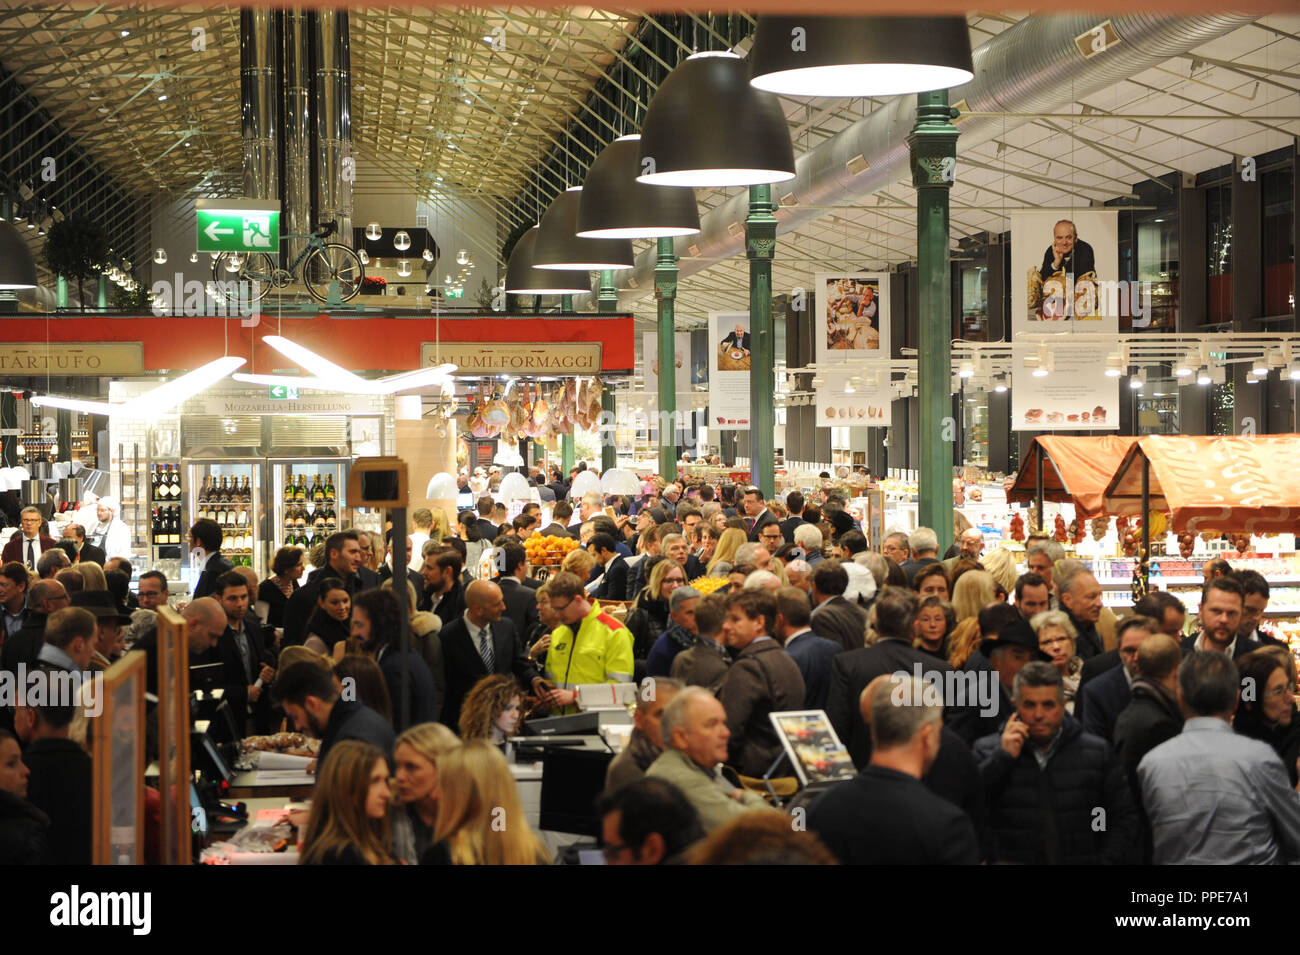 Pour la cérémonie d'ouverture de la première boutique "Eataly" en Allemagne, la compagnie italienne Grimaldi Group a invité plus de 1300 personnes à la Schrannenhalle de Munich. Banque D'Images